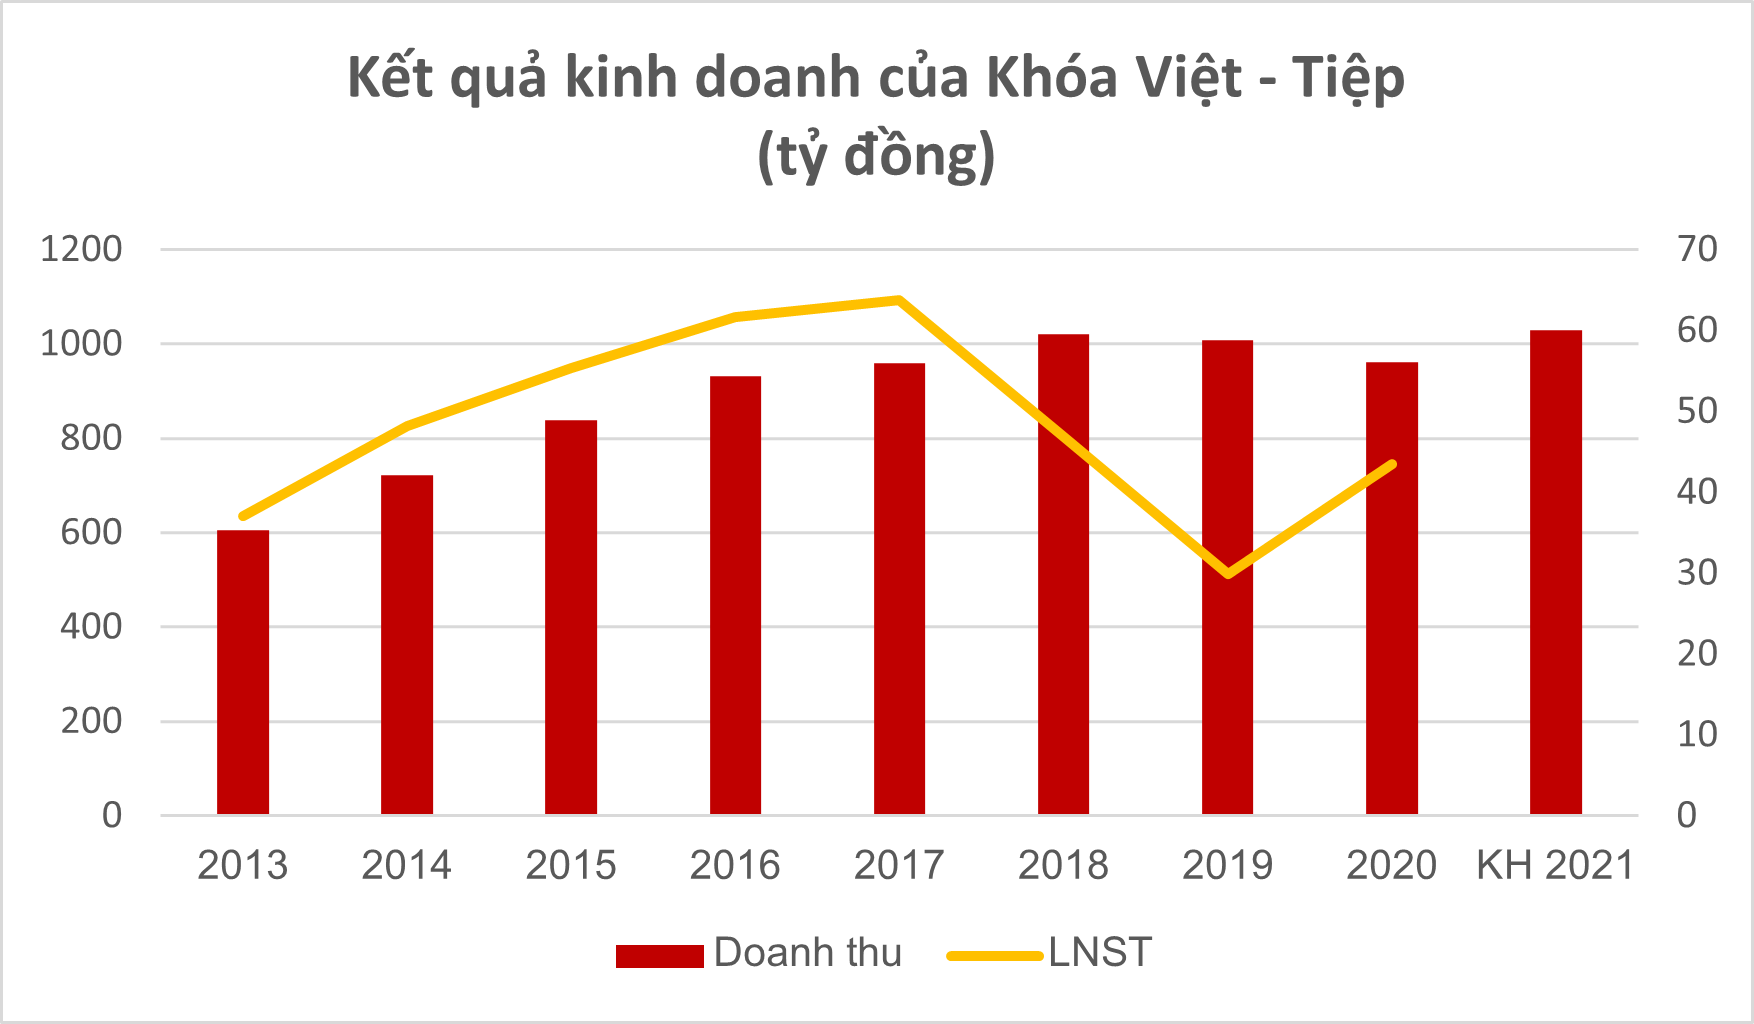 Mở rộng sang lĩnh vực khóa thông minh, Việt Tiệp vẫn sống tốt với lợi nhuận hàng chục tỷ mỗi năm - Ảnh 1.